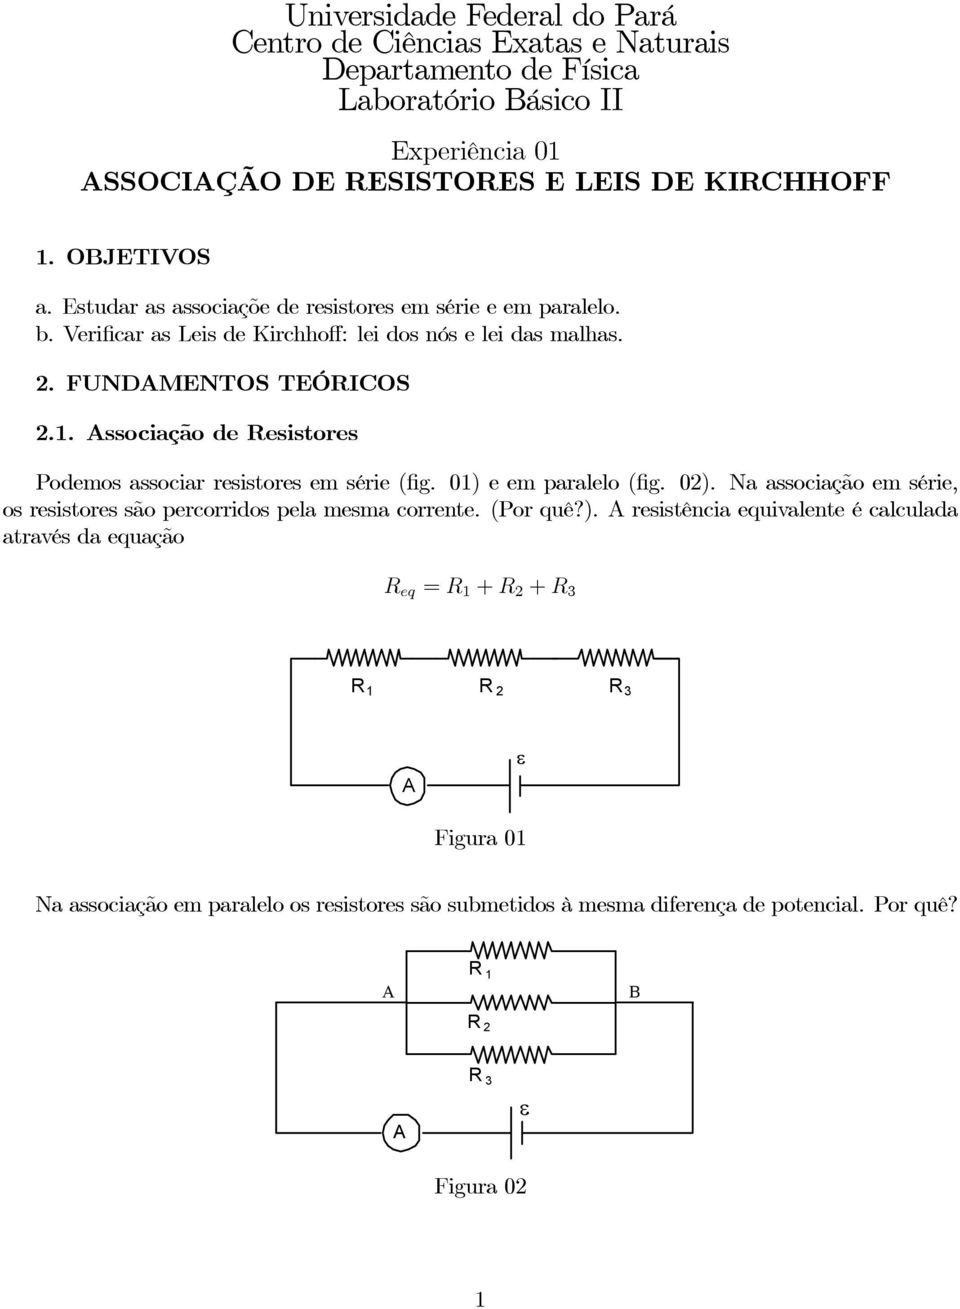 ssociação de Resistores Podemos associar resistores em série (fig. 01) e em paralelo (fig. 02). Na associação em série, os resistores são percorridos pela mesma corrente.